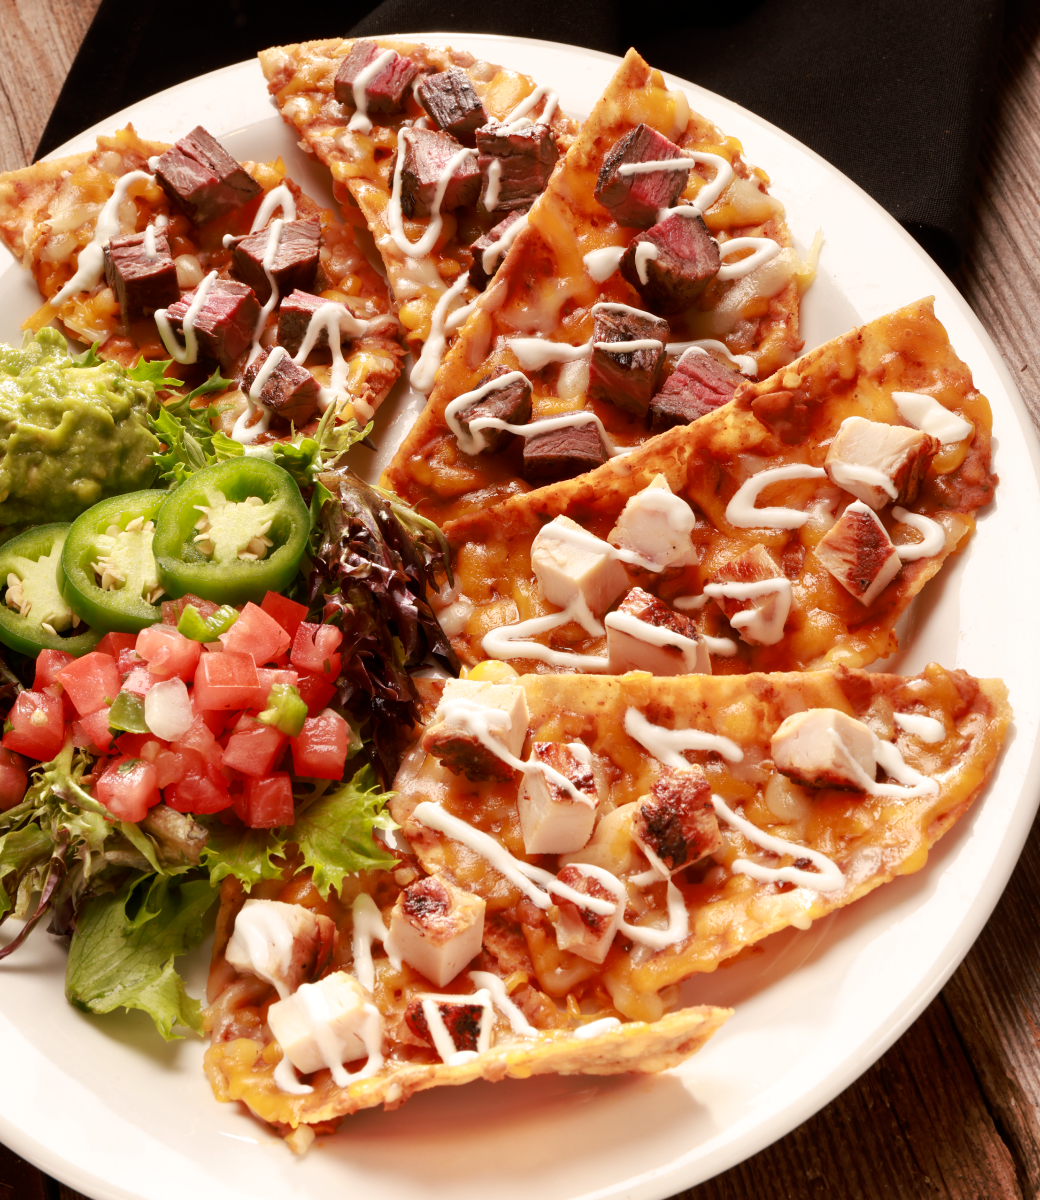 Combination fajita nachos served on plate with pico de gallo